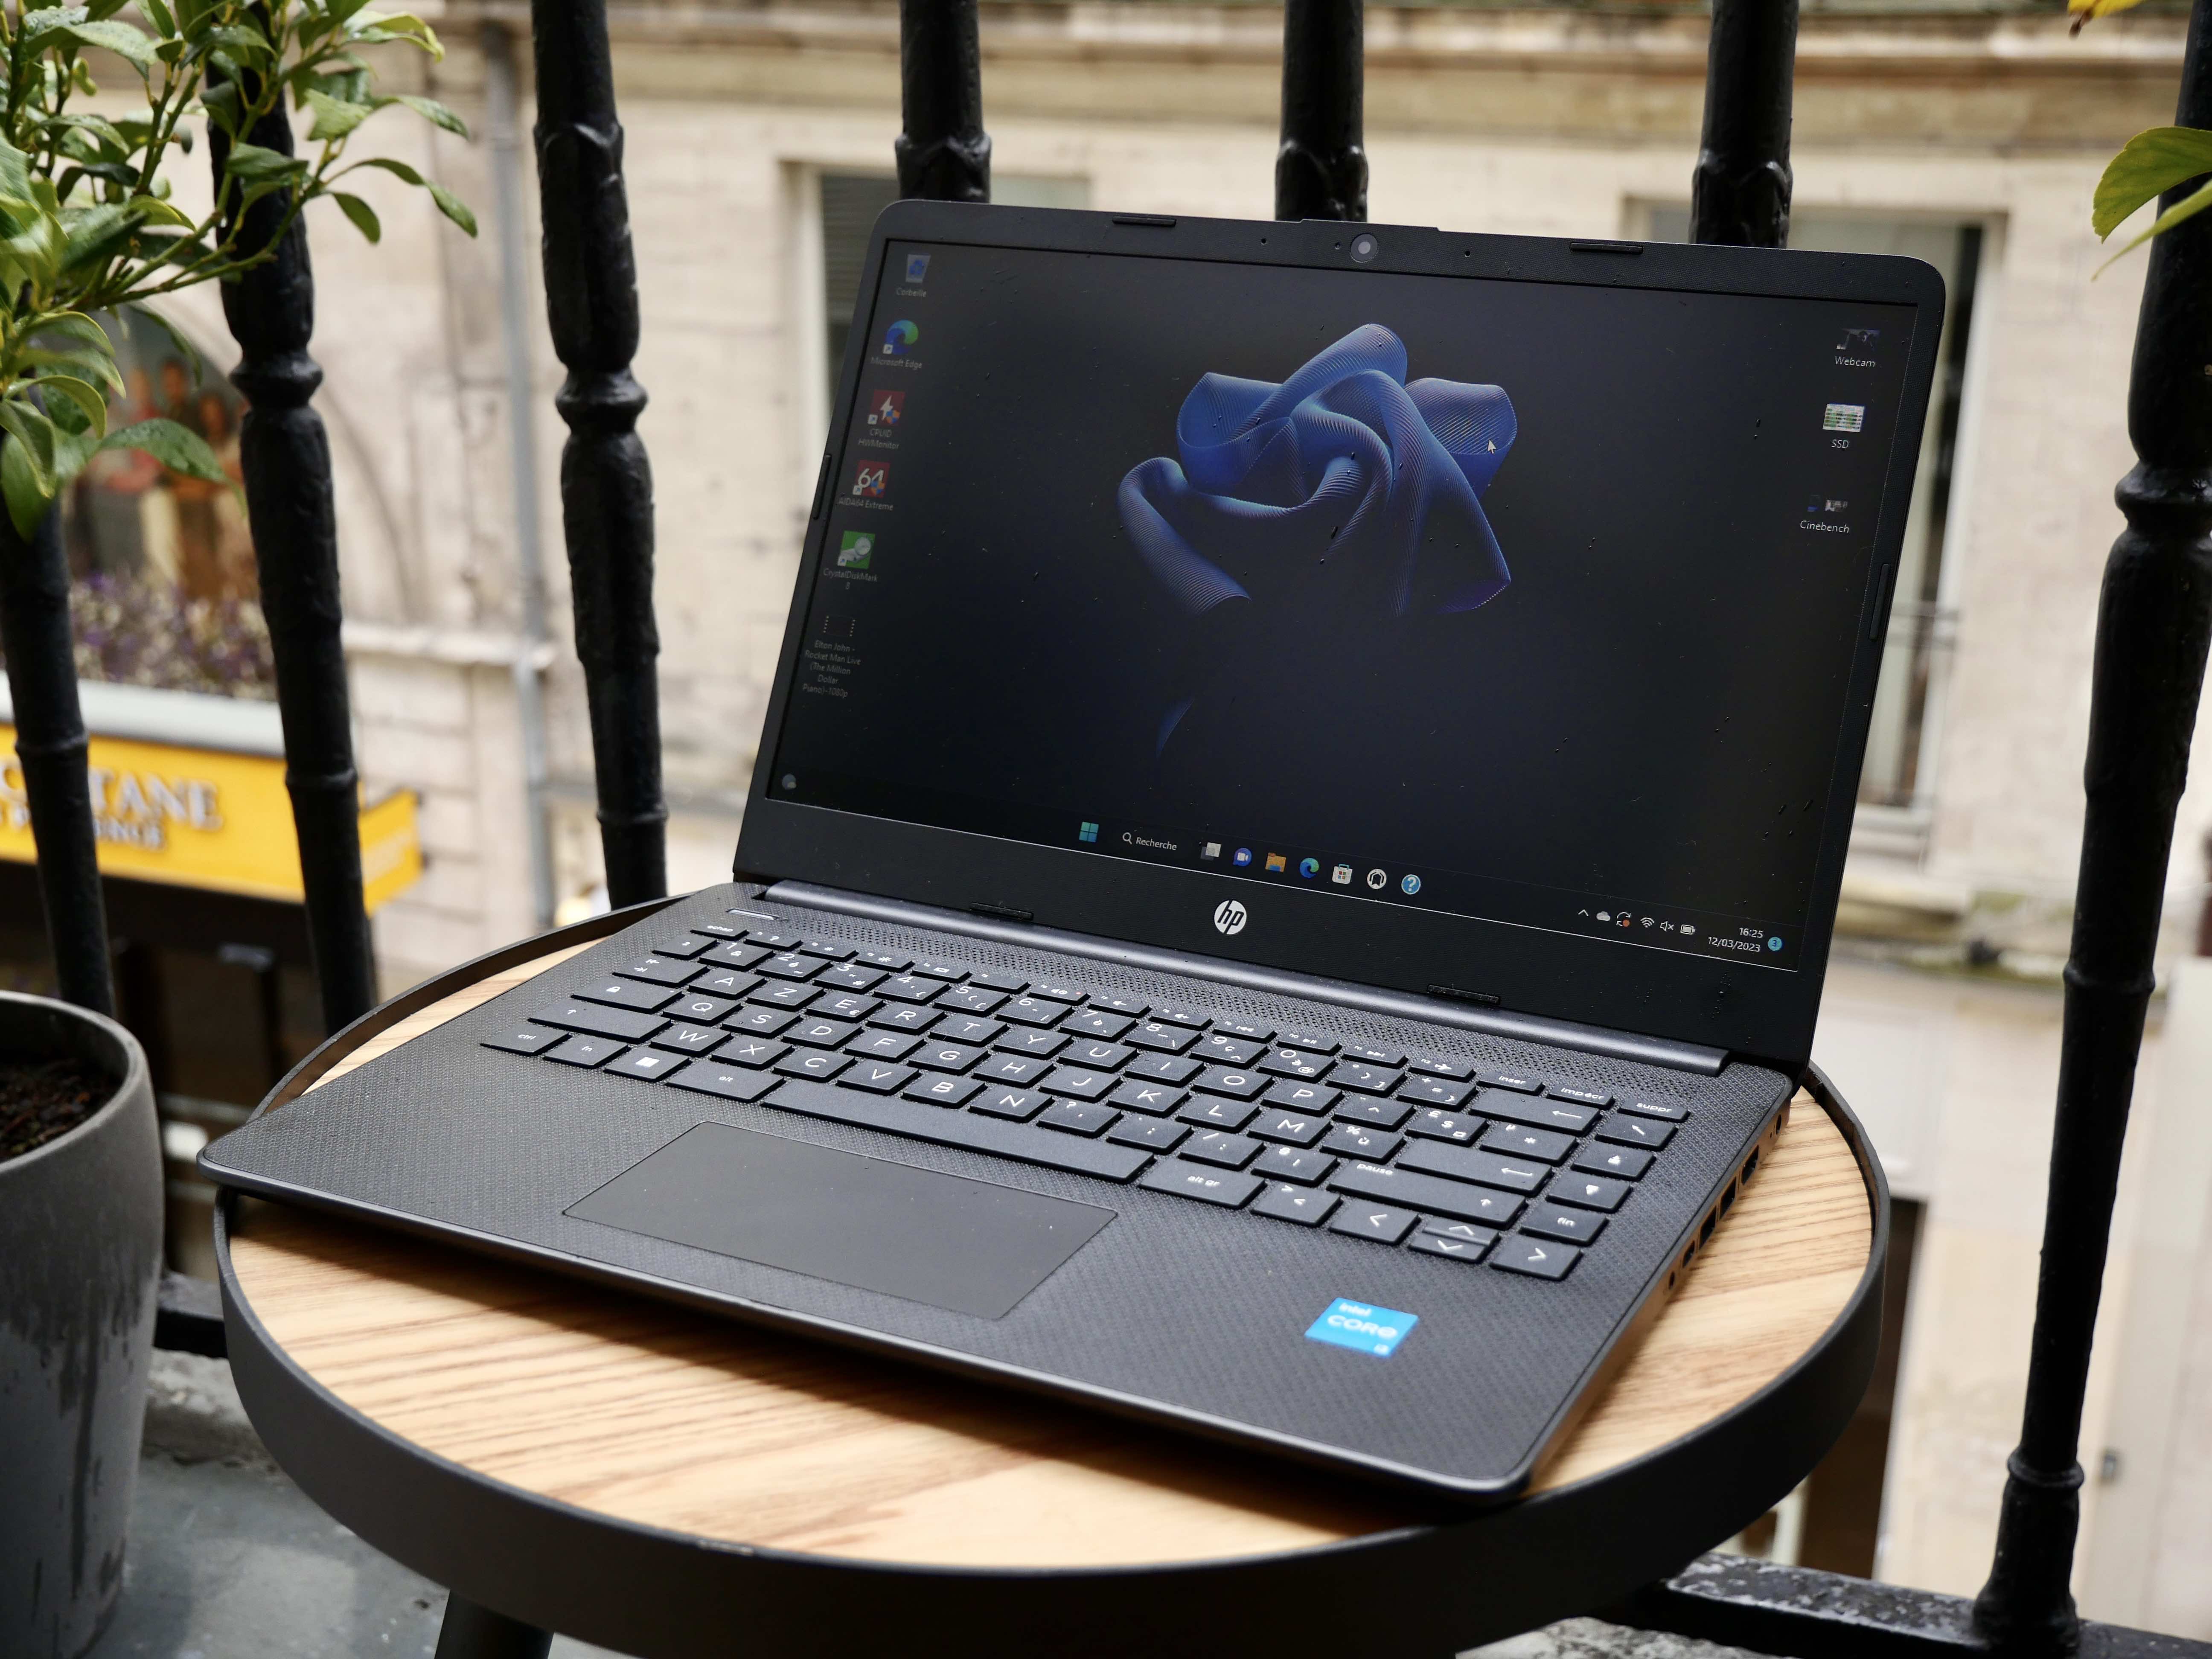 Bon plan PC portable : le HP Laptop 14 est à moins de 350 euros chez